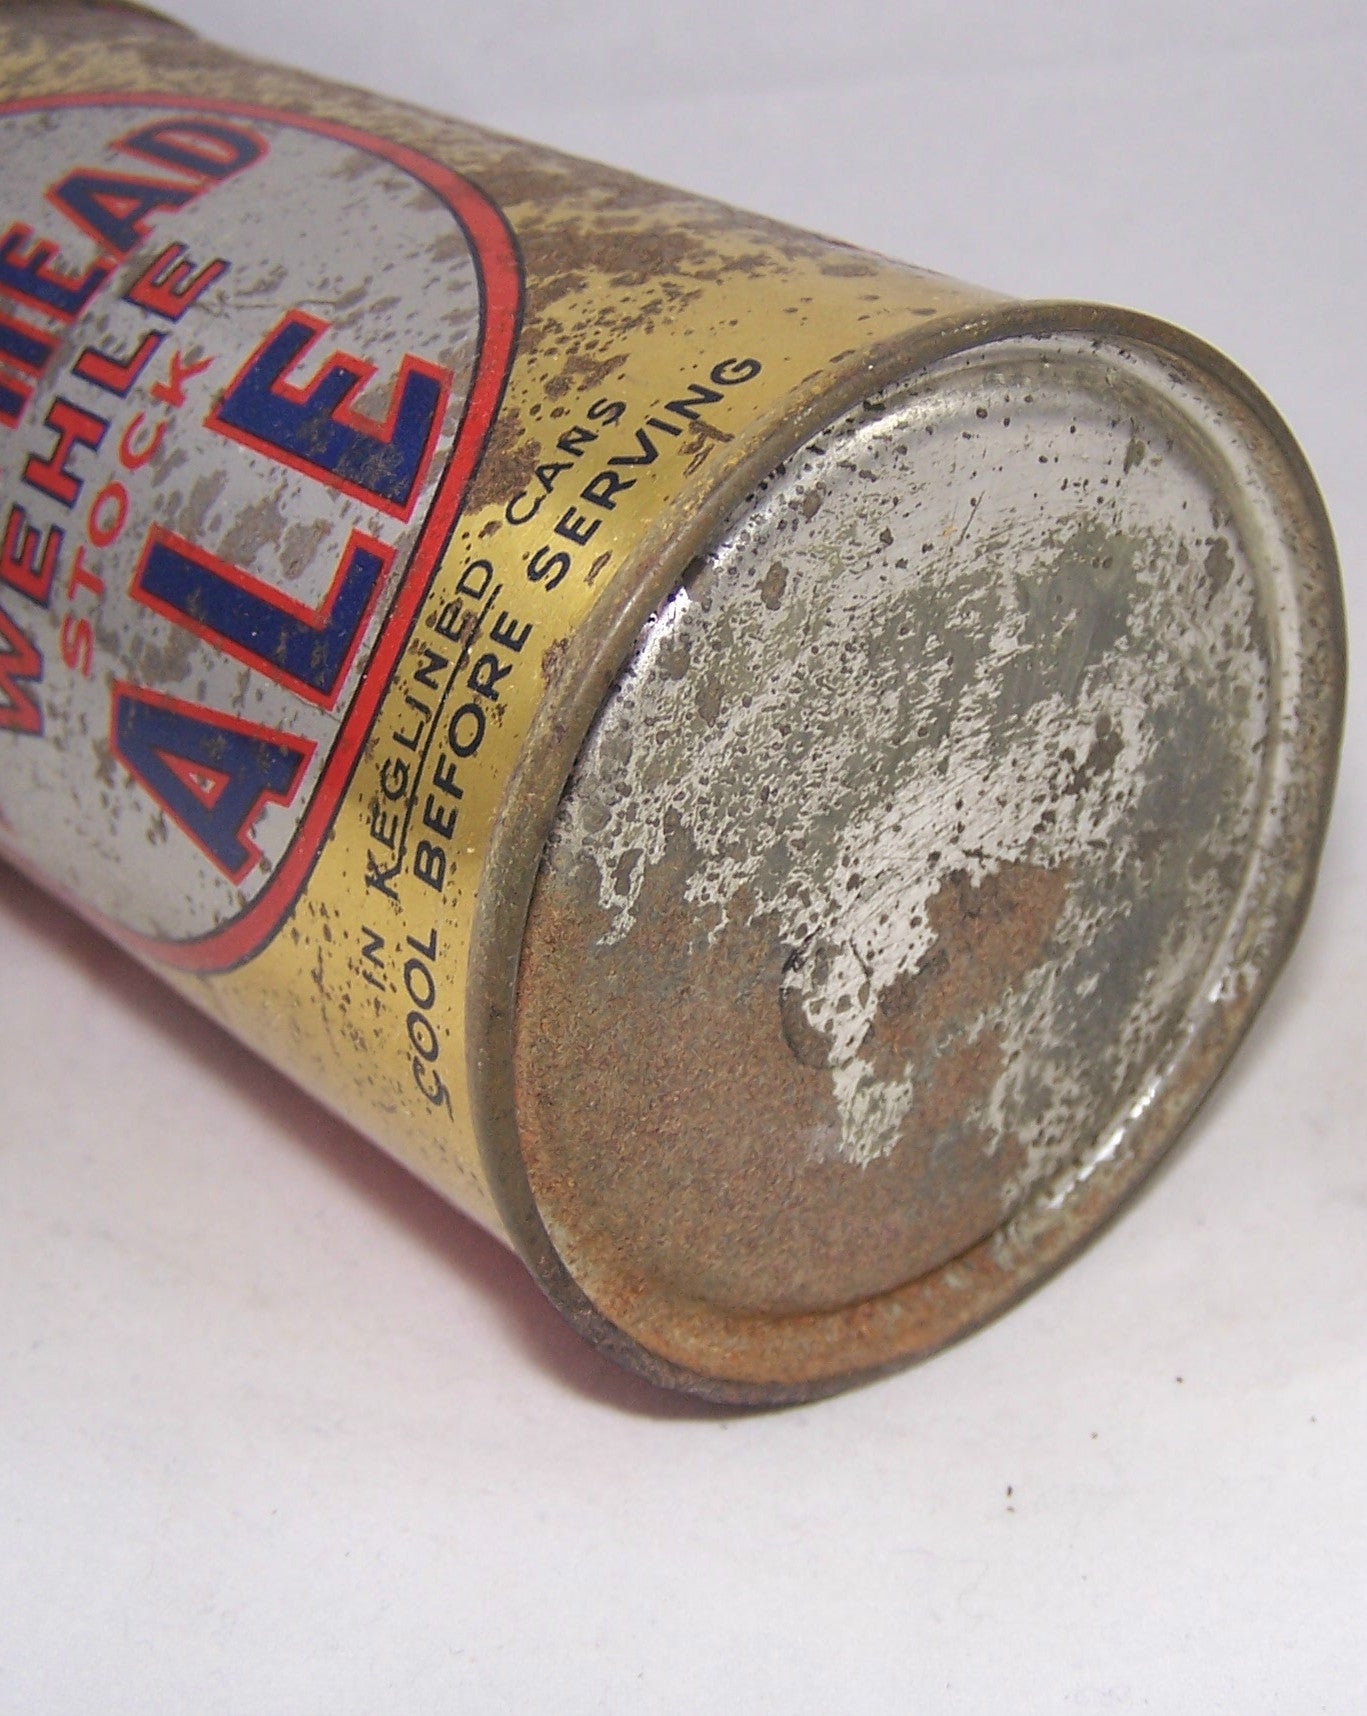 Wehle Mule Head Ale (Long Opener) Lilek #540, Grade 2. Sold on 10/06/17